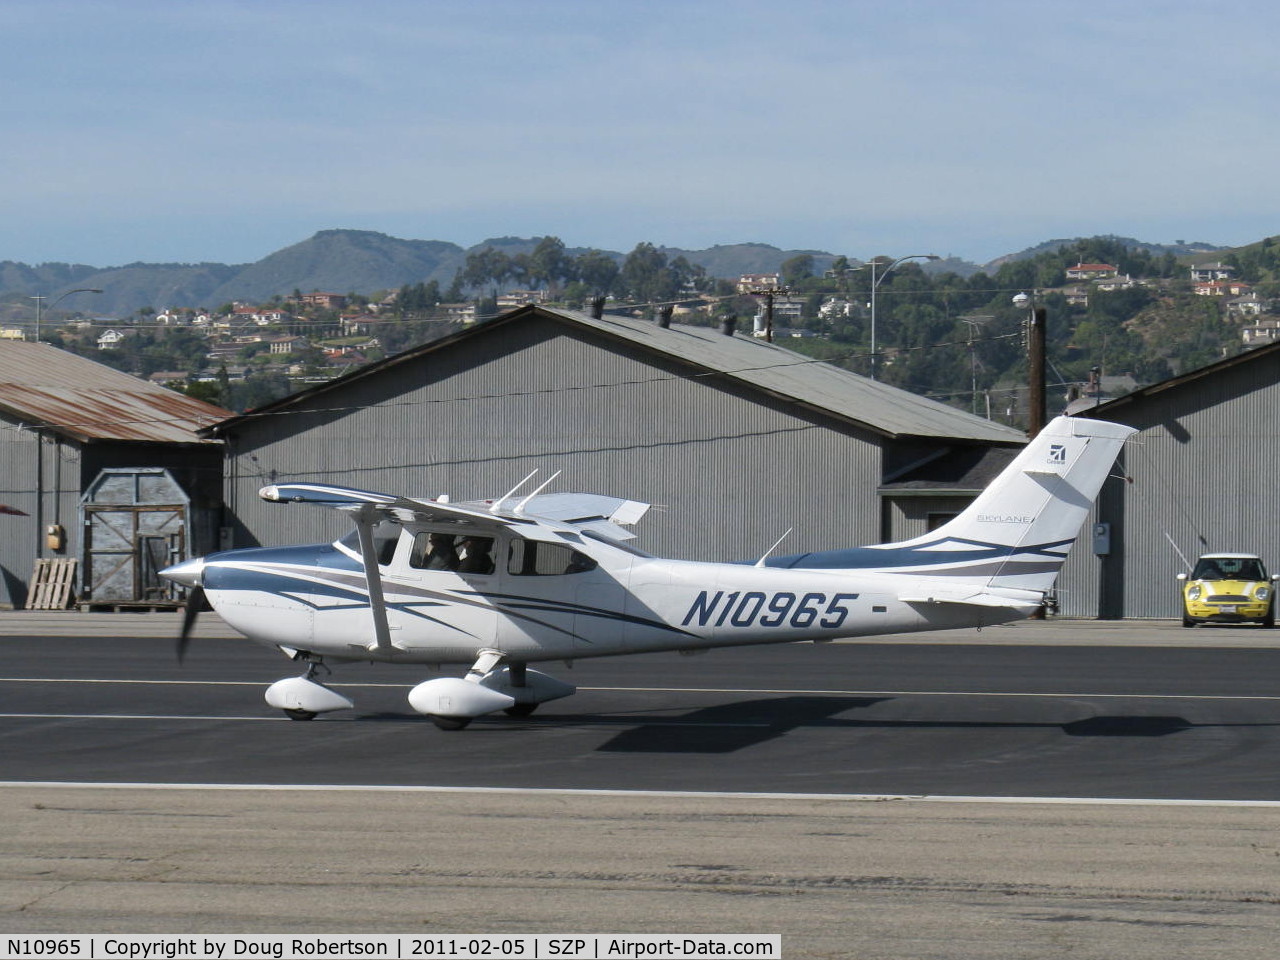 N10965, 2007 Cessna 182T Skylane C/N 18281976, 2007 Cessna 182T SKYLANE, Continental IO-540-AB1A5, 230 Hp, takeoff roll Rwy 22